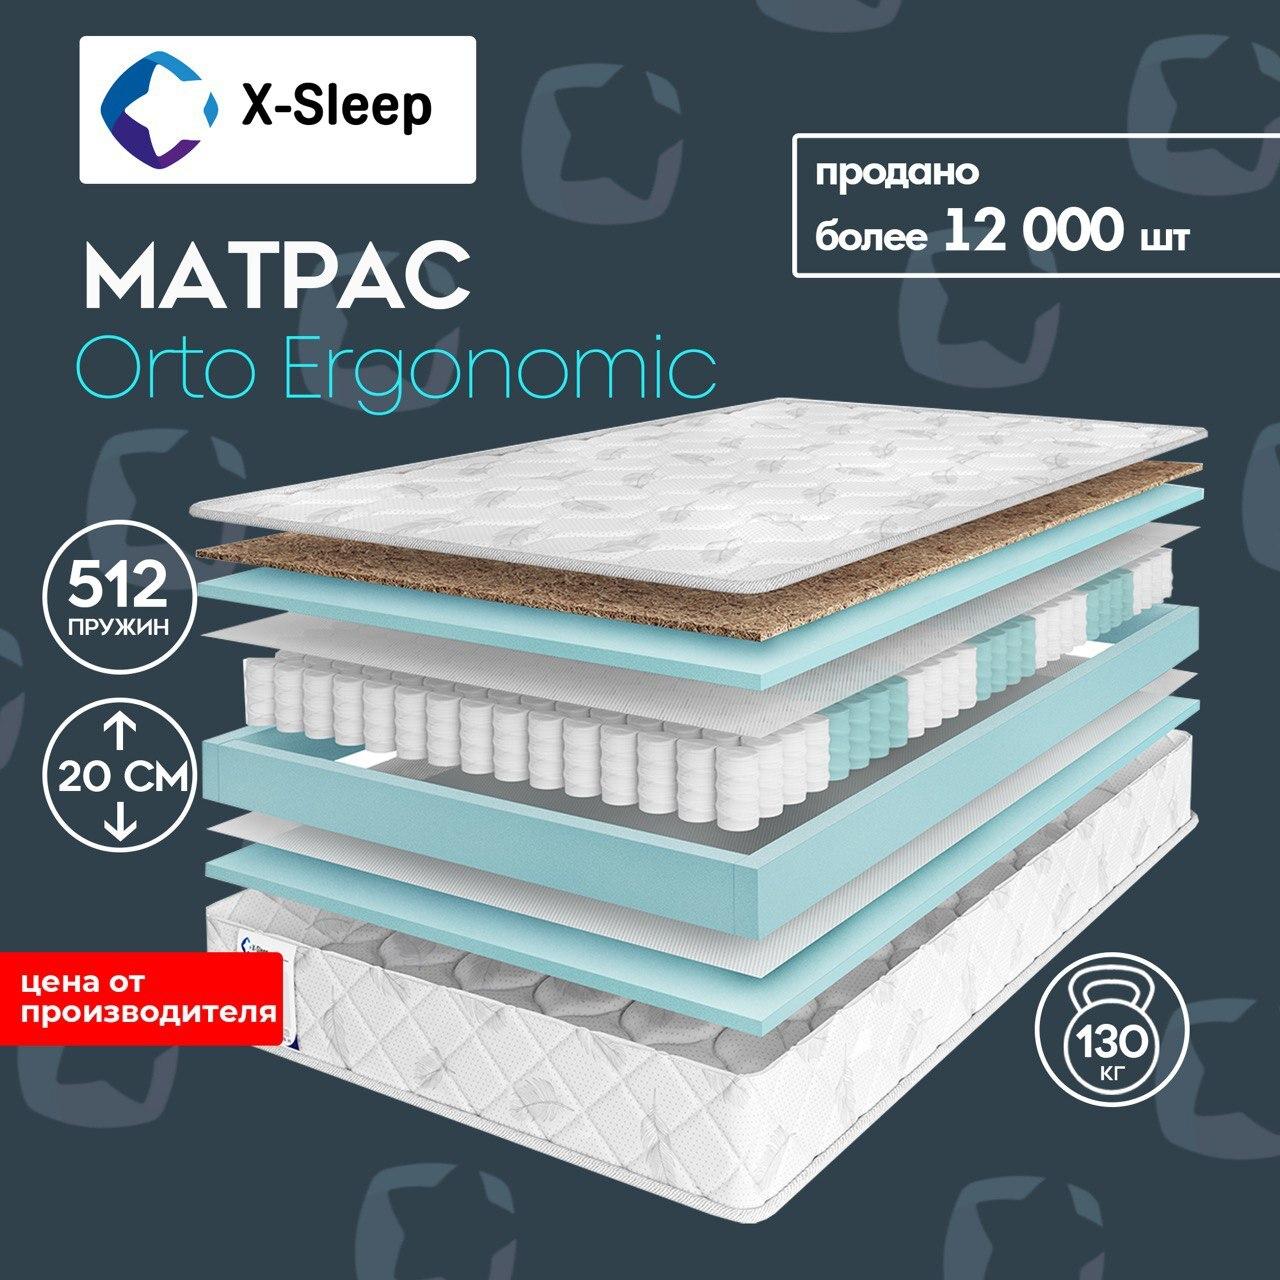 X-Sleep Матрас Orto Ergonomic, Независимые пружины, 140х200 см